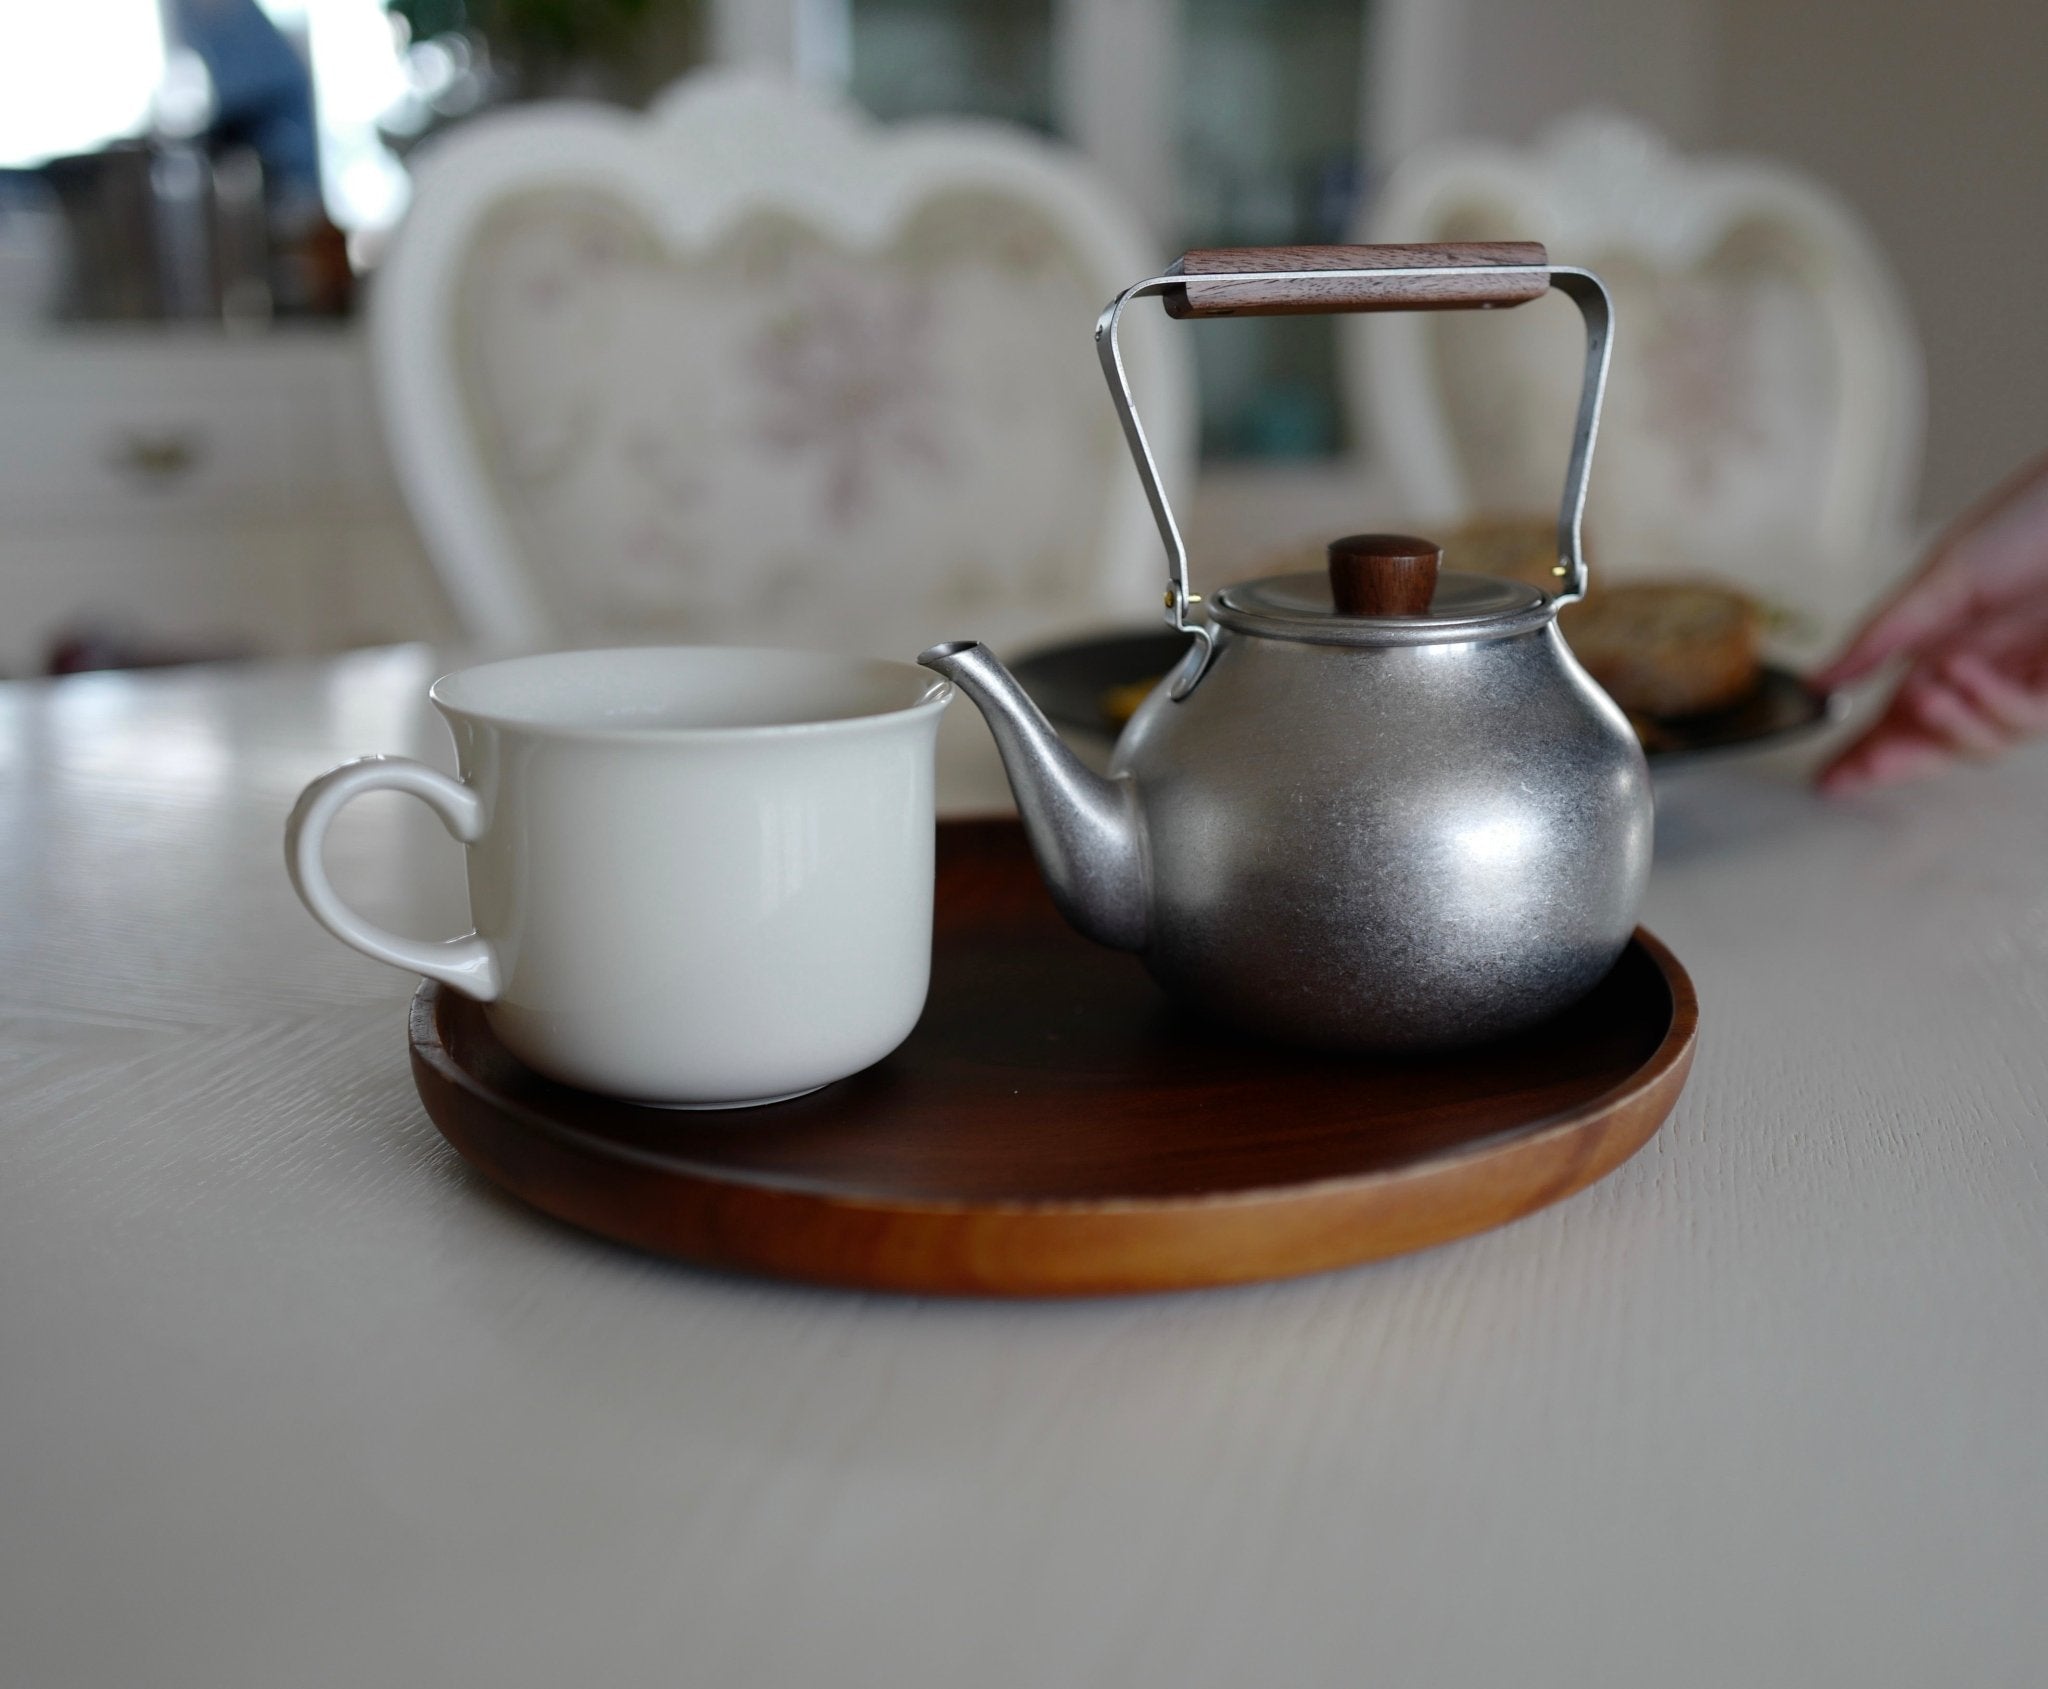 https://ichibanm.com/cdn/shop/products/miyaco-teapot-730916.jpg?v=1688732033&width=2048